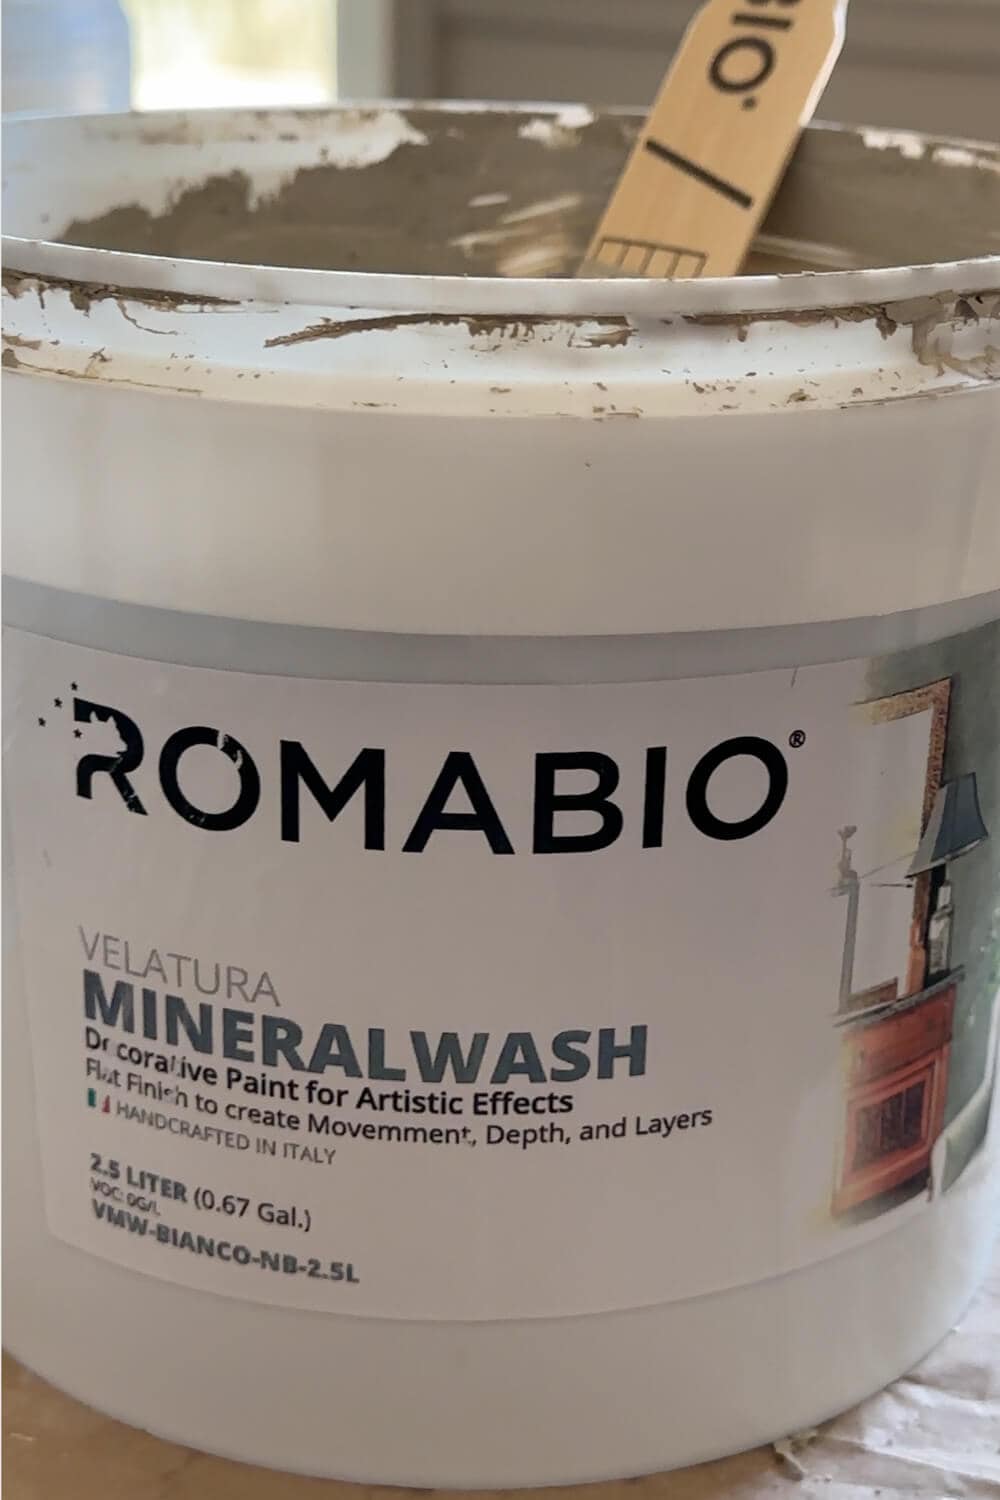 open bucket of velatura mineralwash from Romabio